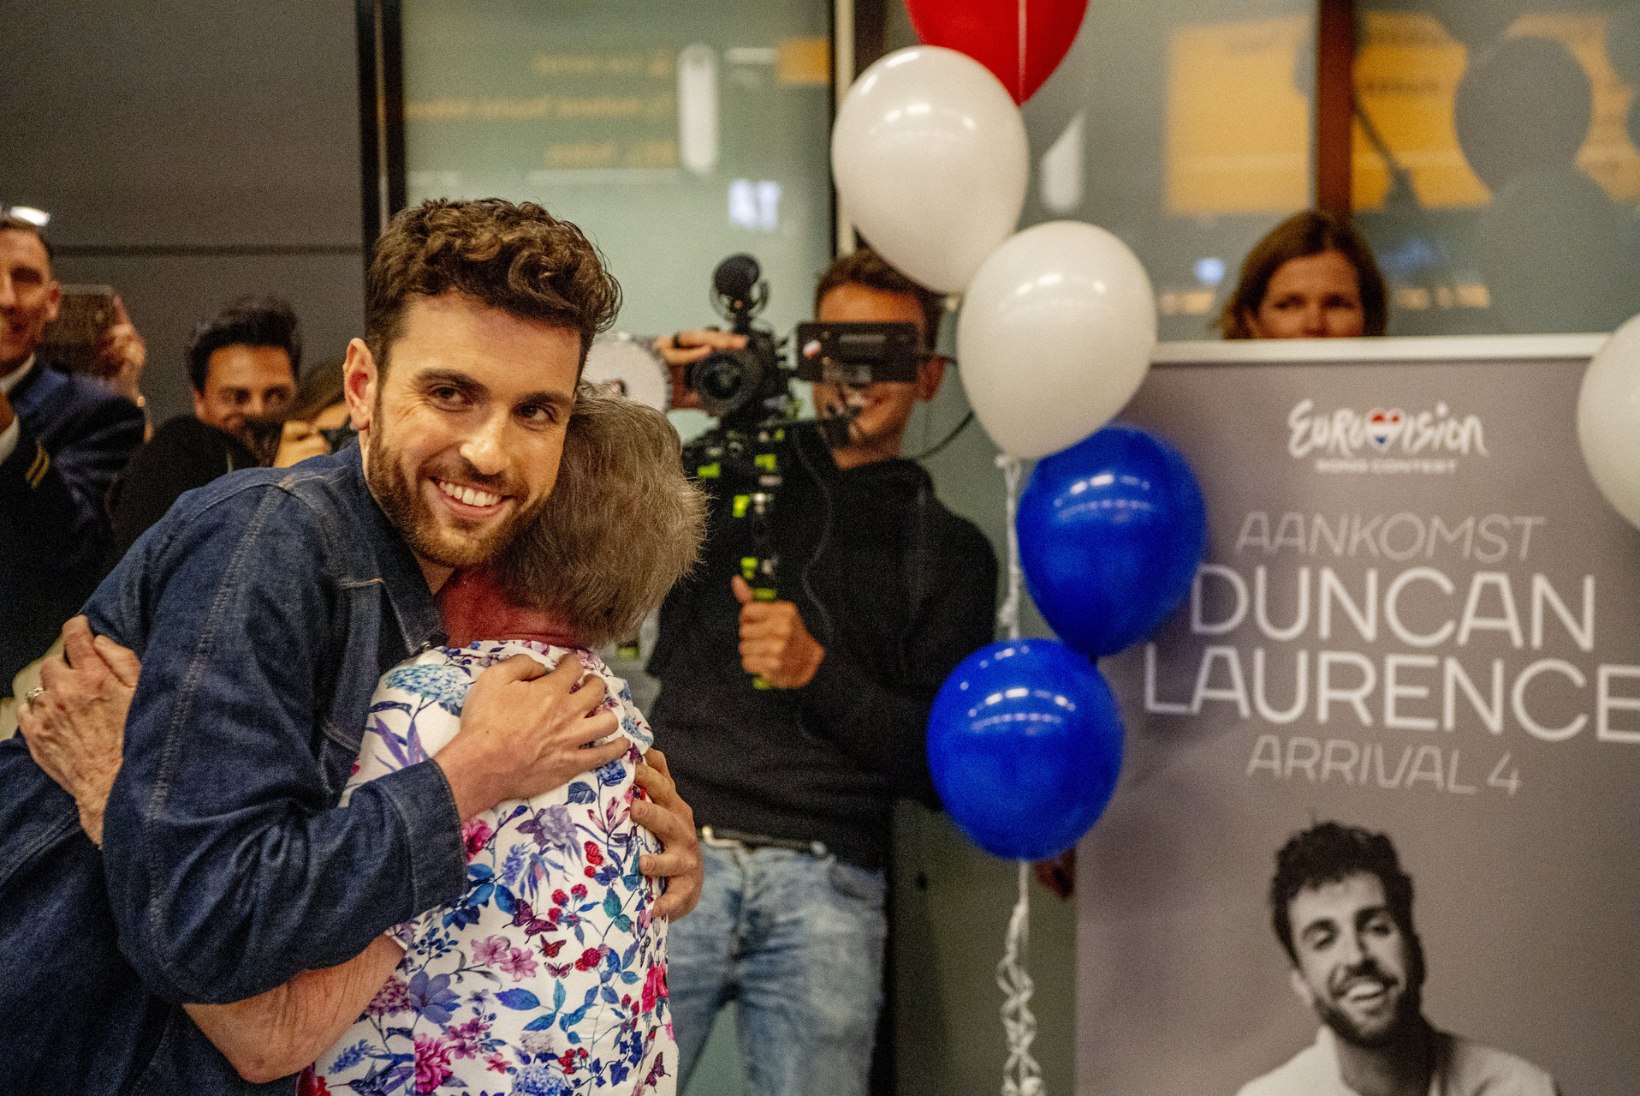 Eurovisioni võitja Duncan: „Mind kiusati poisipõlves palju. Muusika oli minu jaoks pelgupaik.“